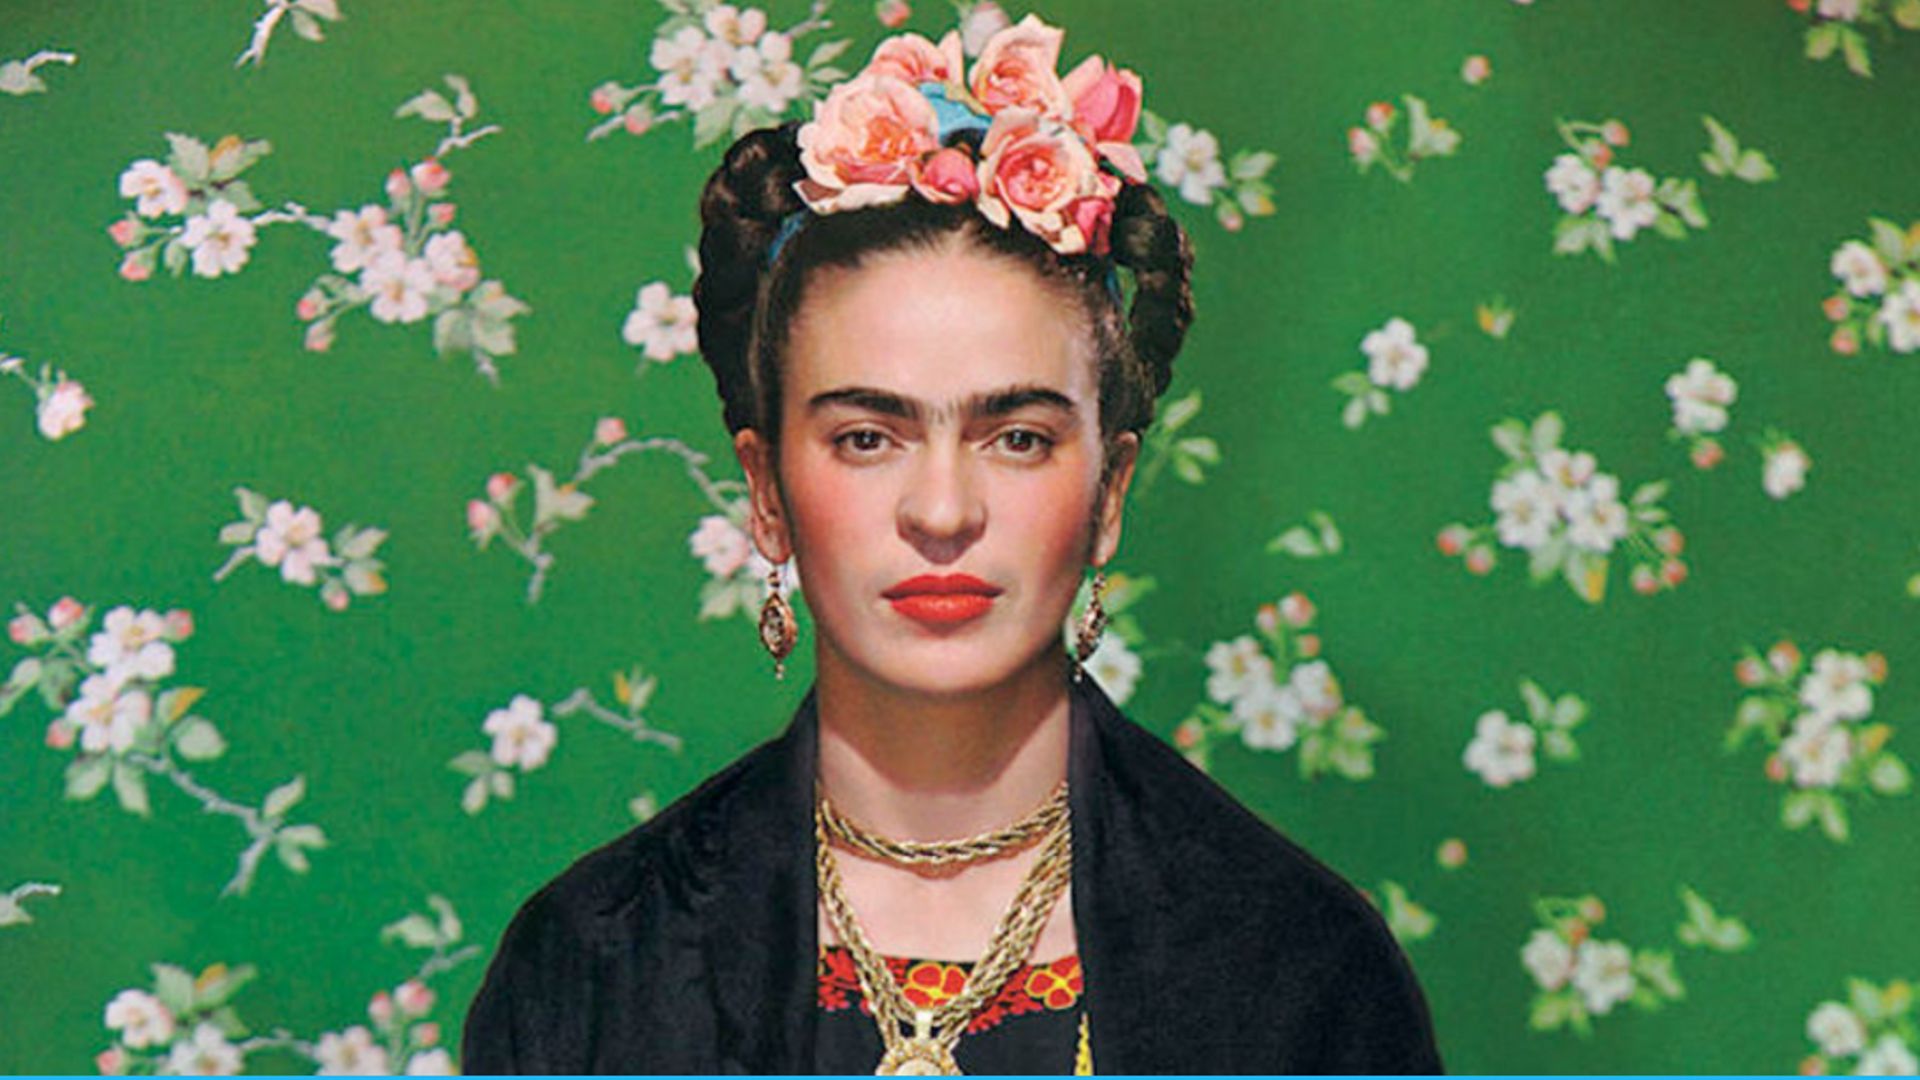 Bientôt une exposition consacrée à l'artiste Frida Kahlo à Bruxelles